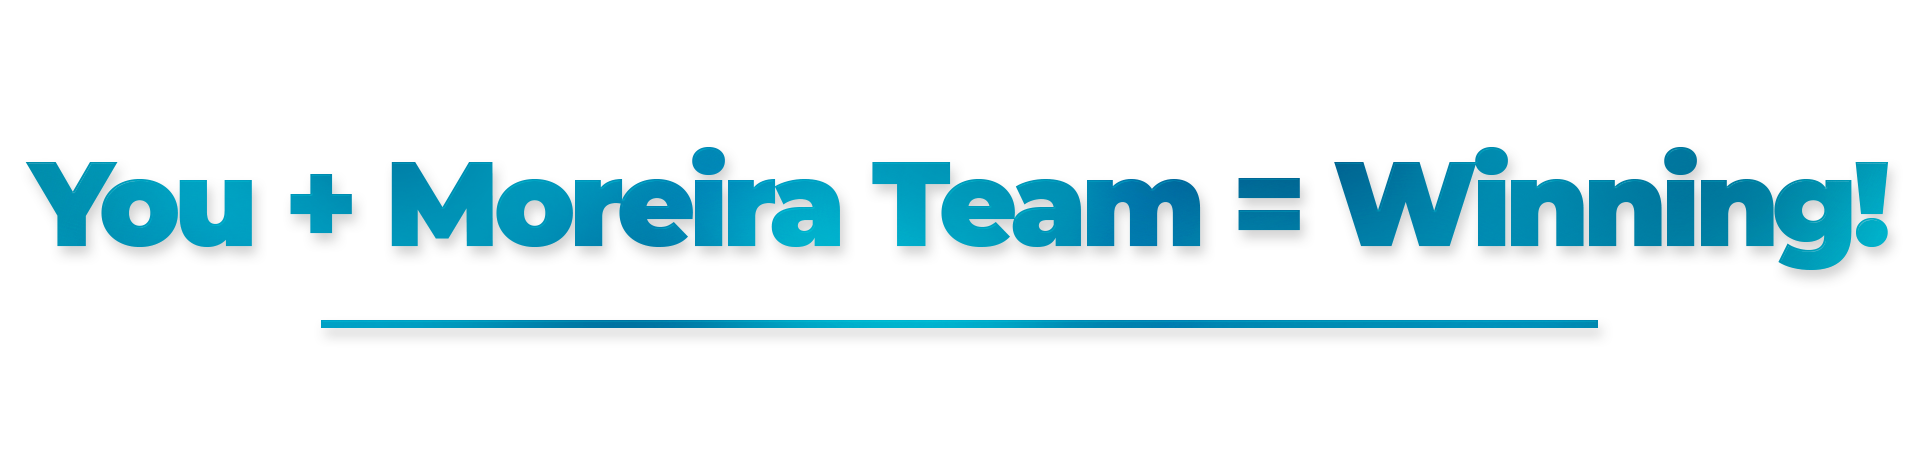 Moreira Team Agent VIP Program